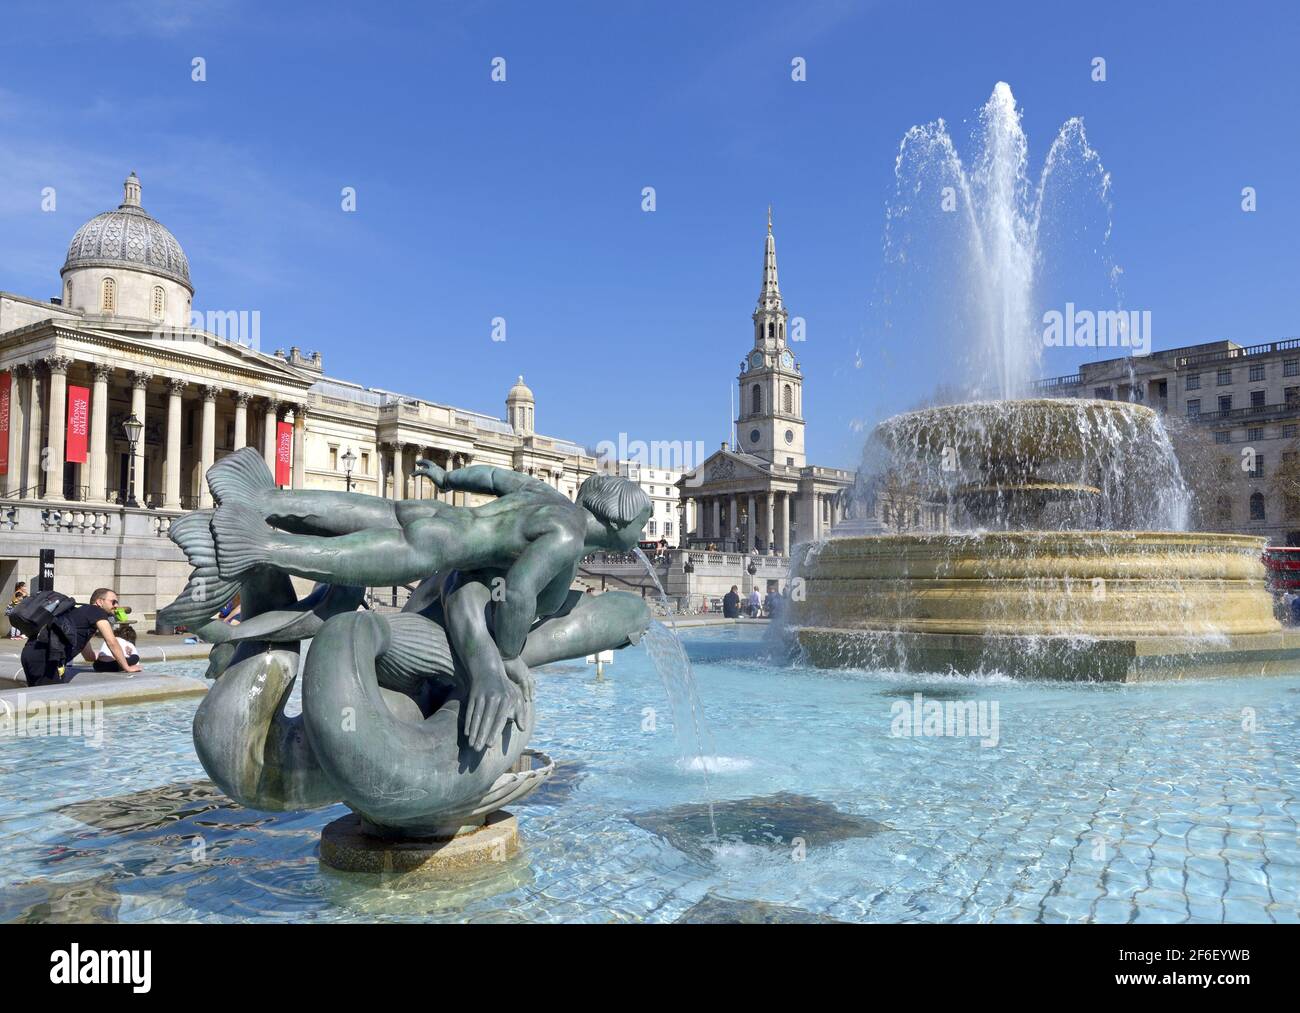 Londra, Inghilterra, Regno Unito. Trafalgar Square il giorno più caldo di marzo per 50 anni - 30 marzo 2021 Foto Stock